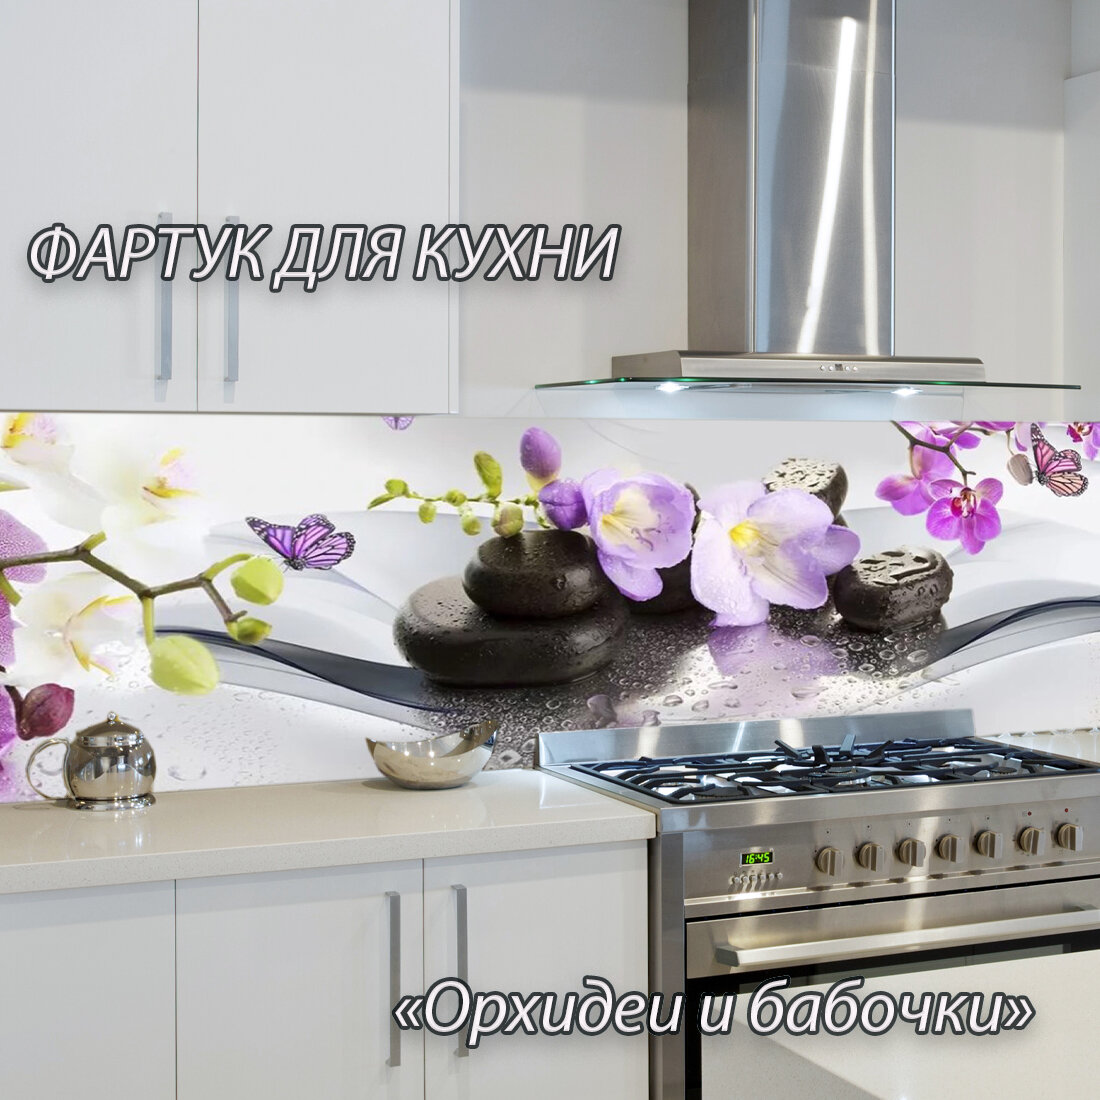 Фартук для кухни из АБС пластика "Орхидеи и бабочки" 3000*600*1,5мм. Кухонный фартук ABS с фотопечатью. - фотография № 2